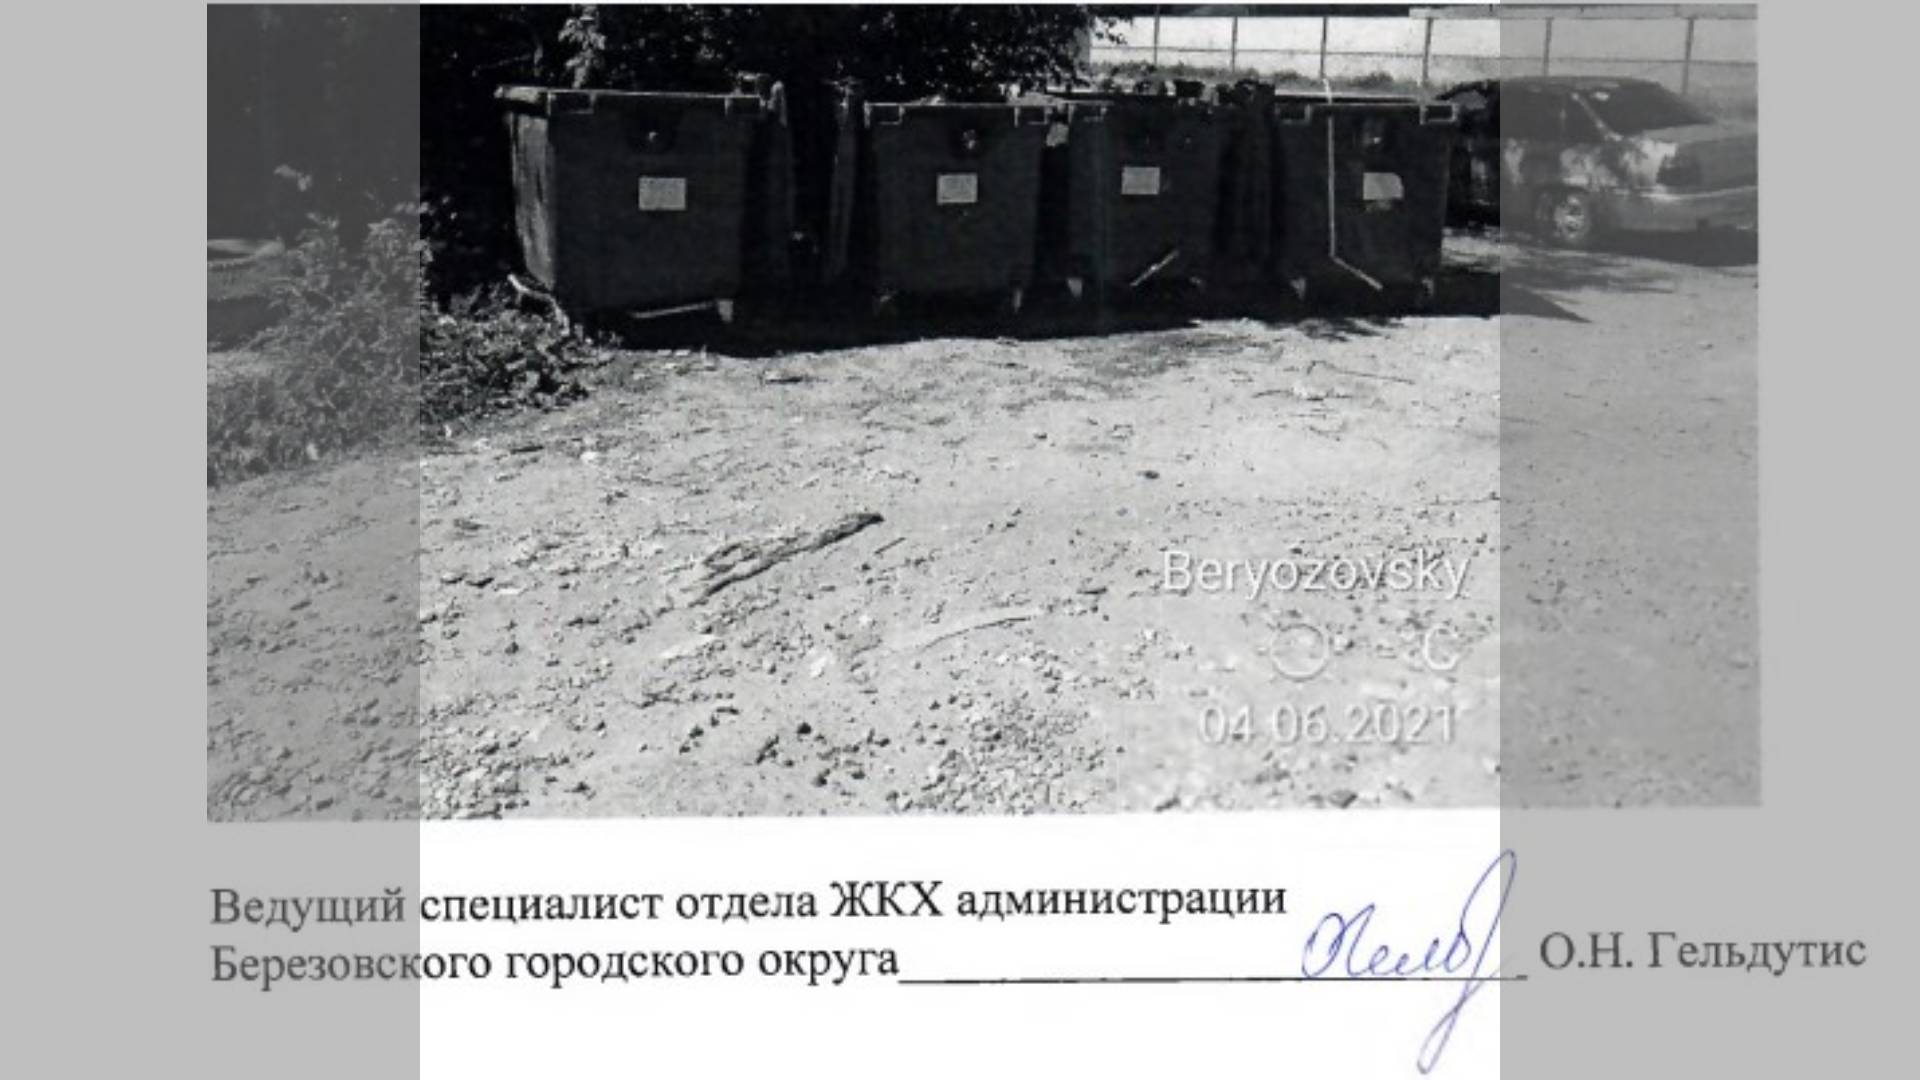 Результат нашей работы: Незаконная свалка мусора в г. Березовском